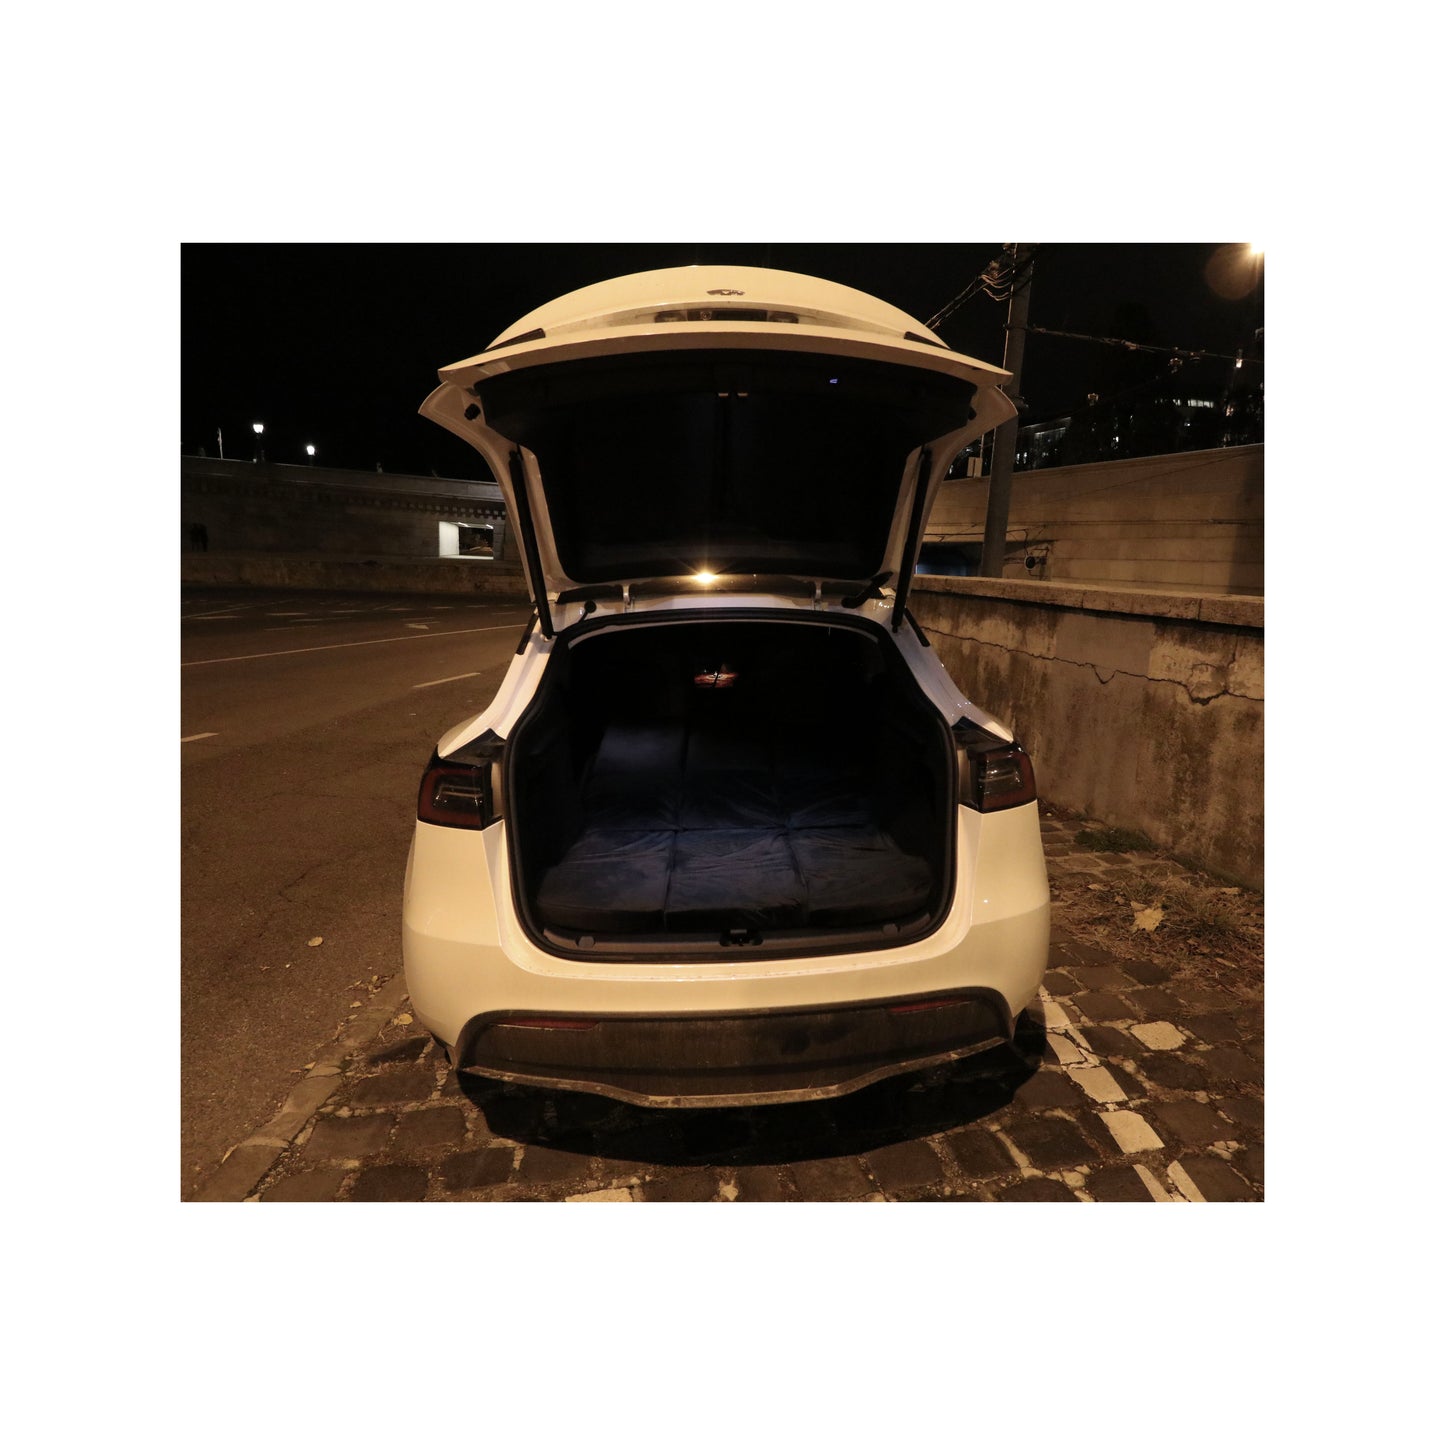 EV-MATS Deluxe CAMP SET för Tesla Model 3 med Tesla-madrass med vattentät väska för bakre bagageutrymmet, satinlakan, täcke, 2 kuddar med fodral, 11 nyanser och 2 vattentäta väskor för Tesla Model 3 främre bagageutrymme